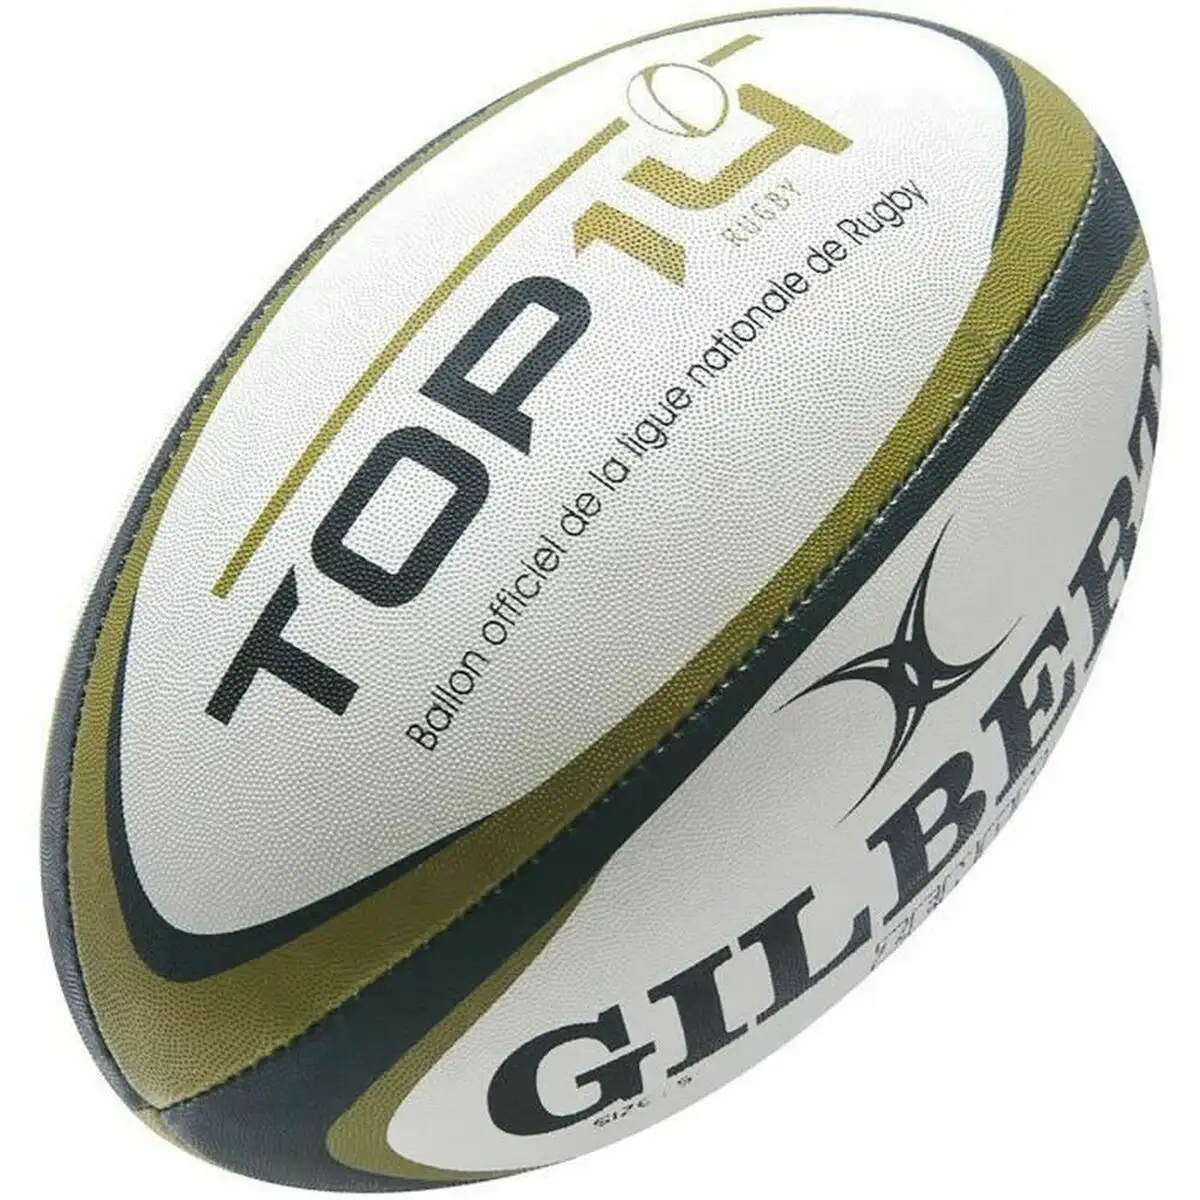 Ballon de rugby gilbert g tr4000 top 14 5 multicouleur_1677. DIAYTAR SENEGAL - Où la Qualité et la Diversité Fusionnent. Explorez notre boutique en ligne pour découvrir une gamme variée de produits qui incarnent l'excellence et l'authenticité.